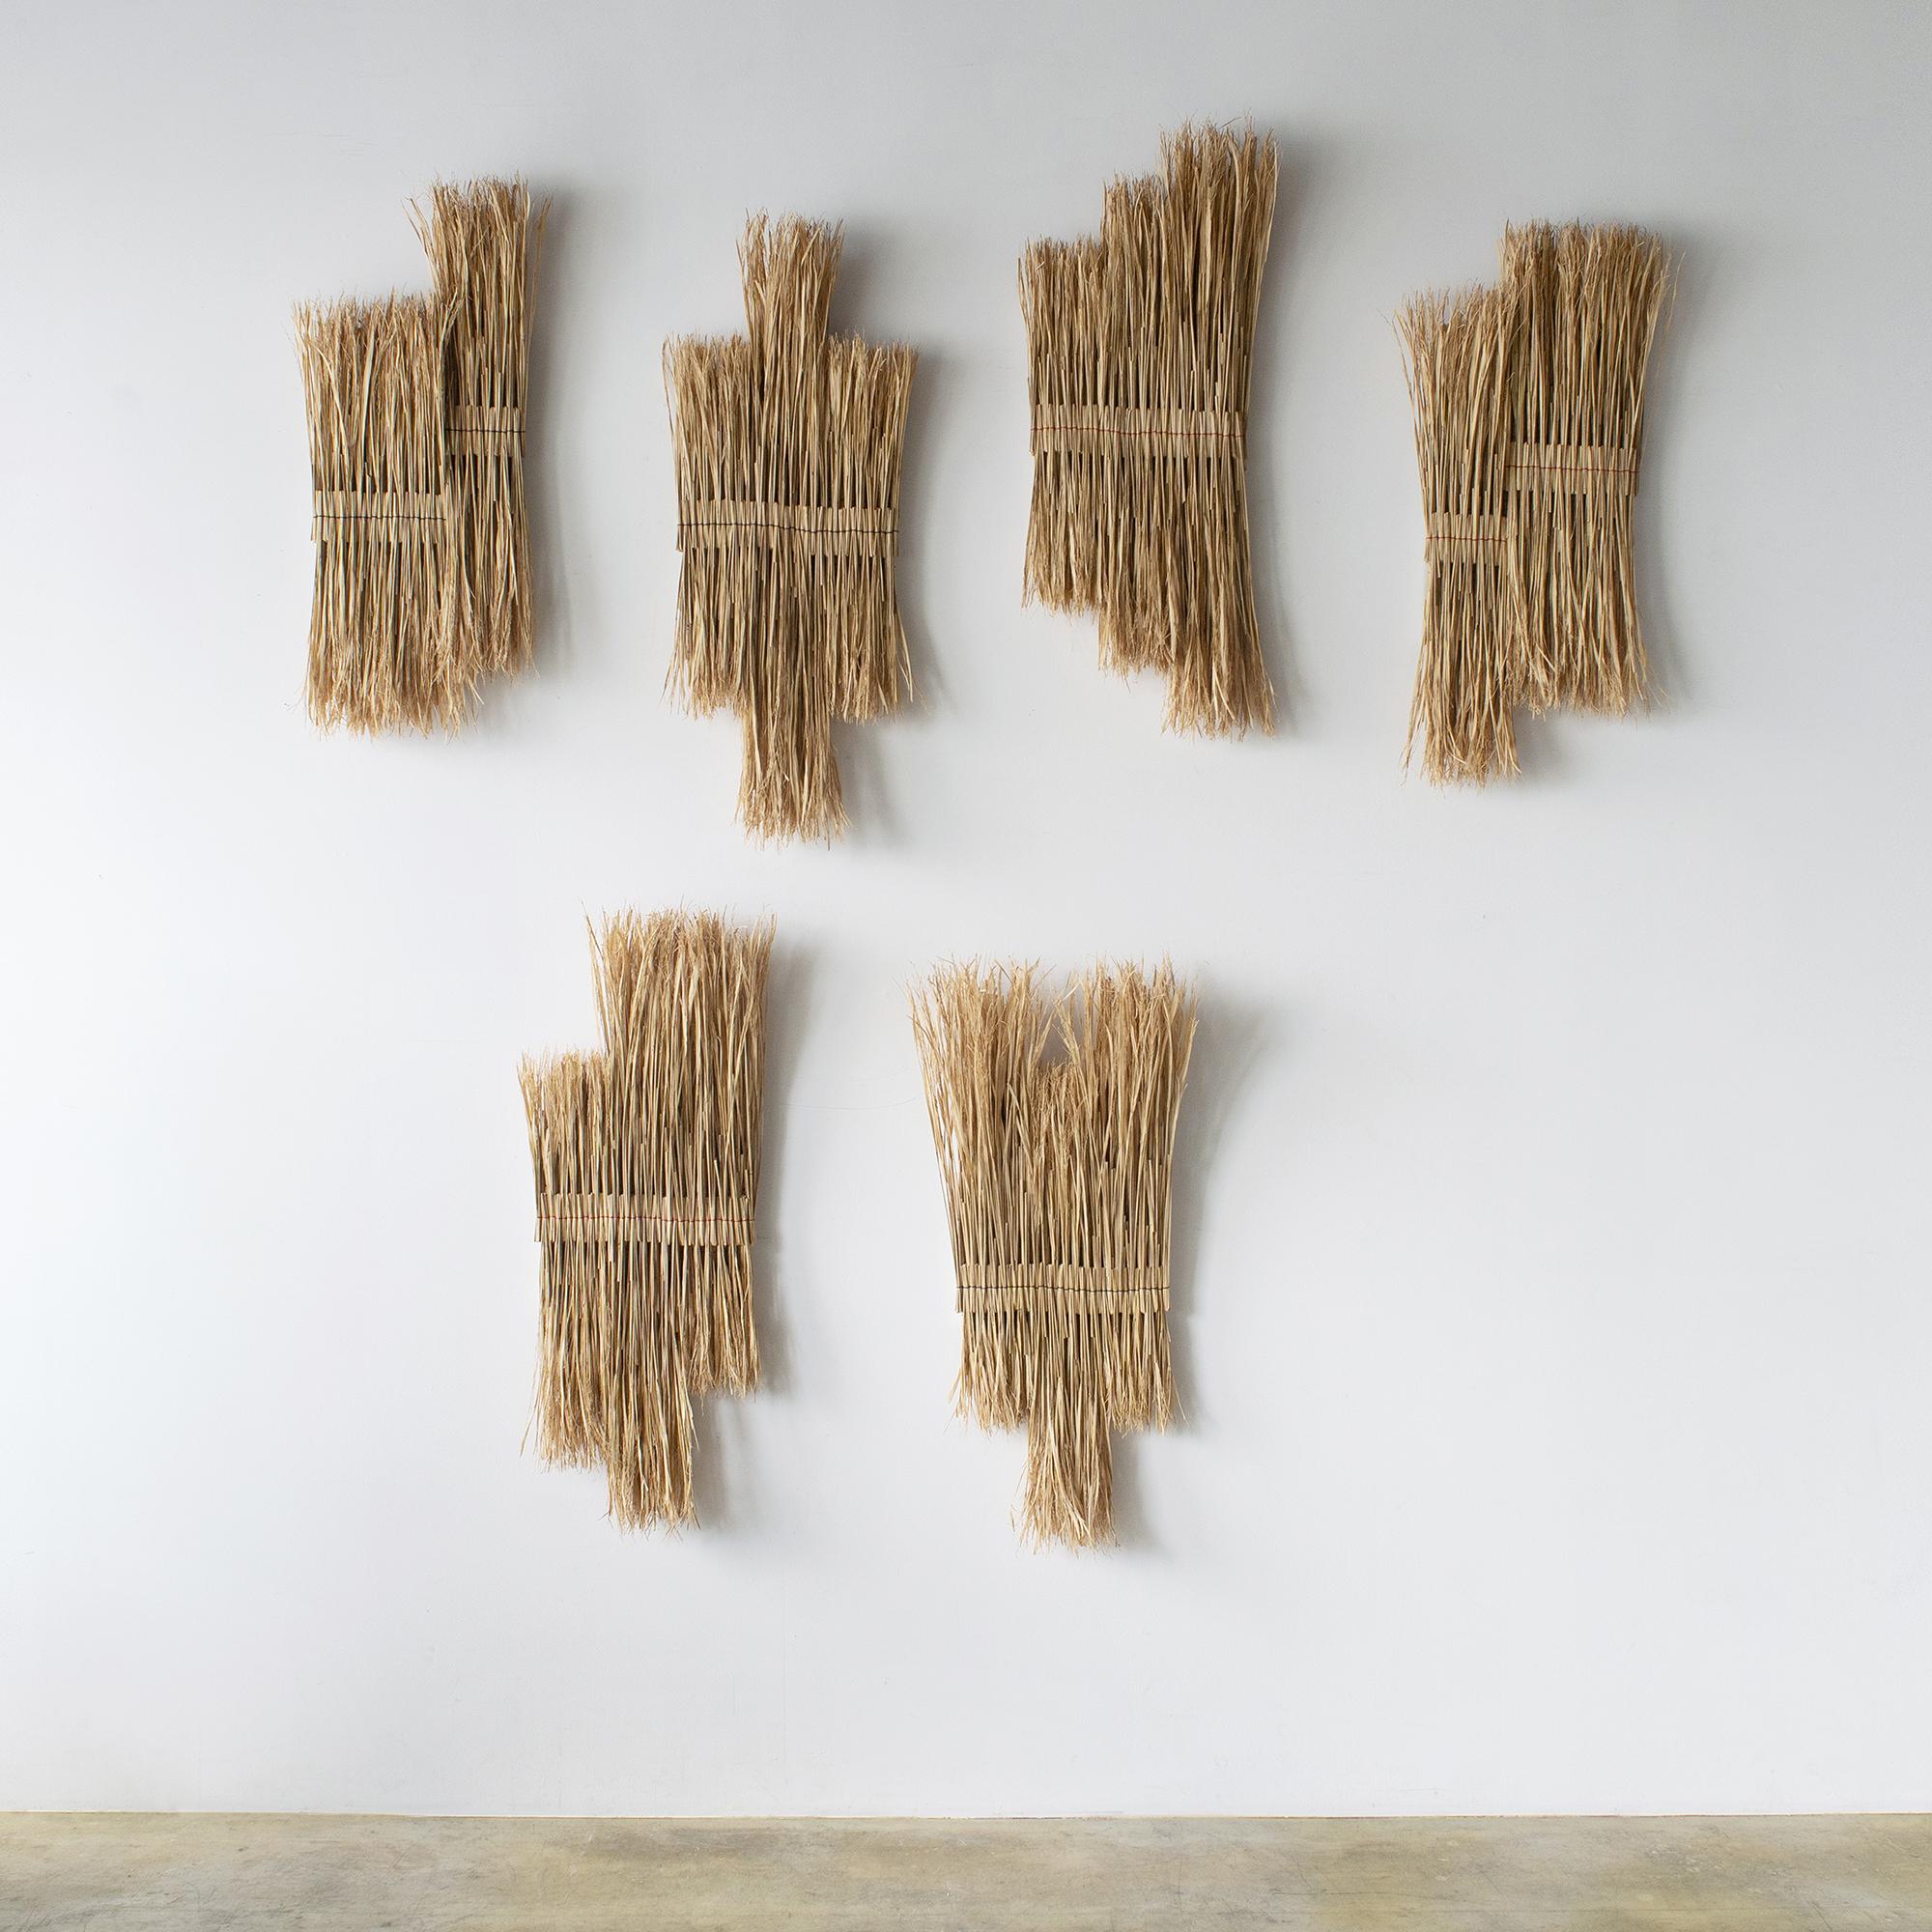 Organic Modern ARKO Wall Art15 Contemporary Art Japanese Craft Rice Straw Art Wall Sculpture For Sale